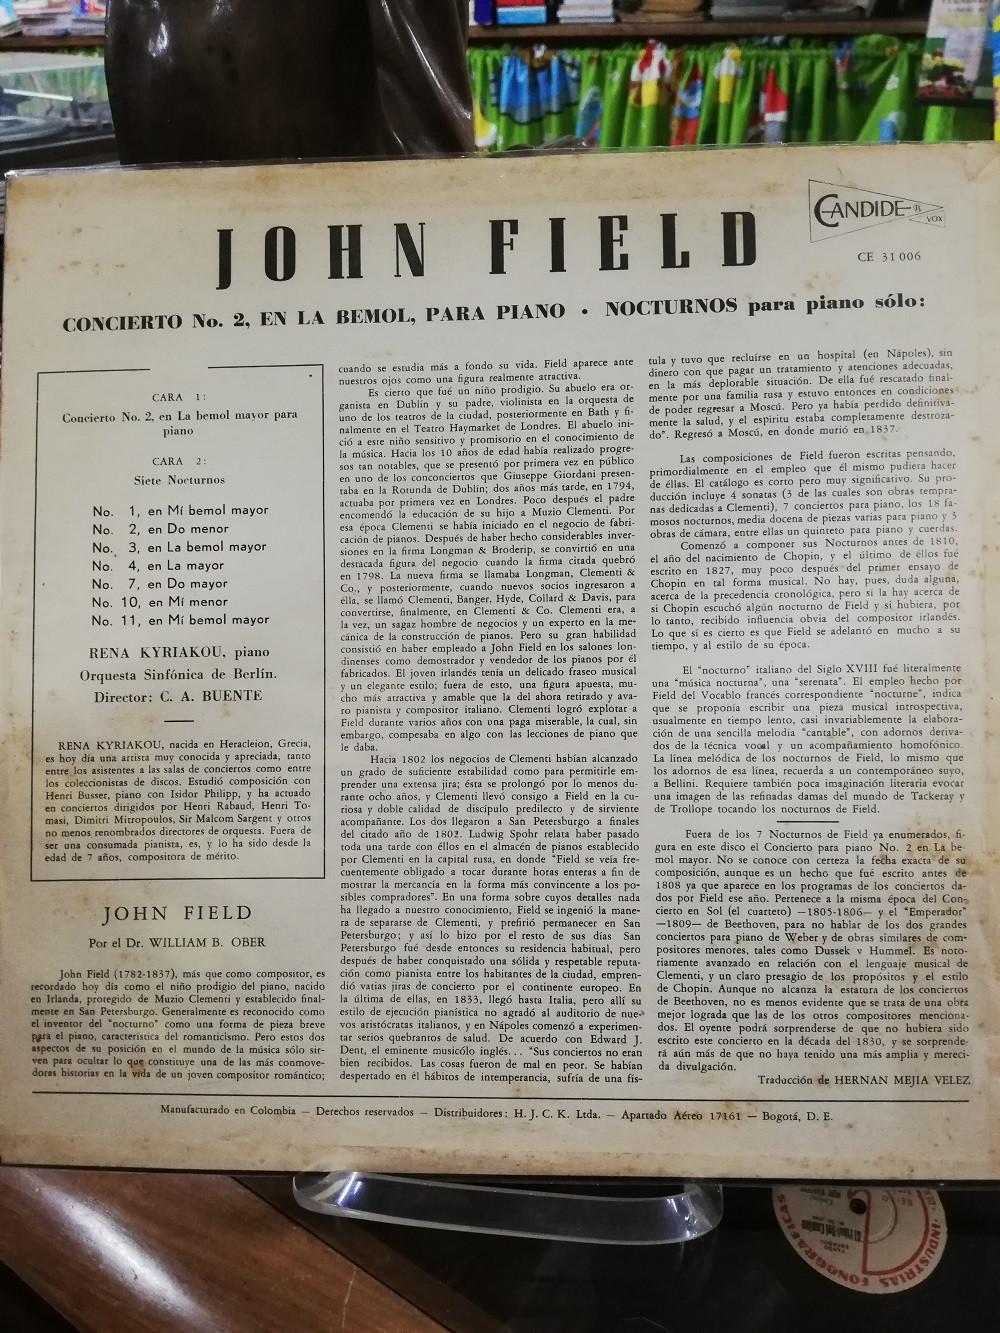 Imagen LP JOHN FIELD - CONCIERTO No. 2 EN LA BEMOL, PARA PIANO/NOCTURNOS PARA PIANO 2